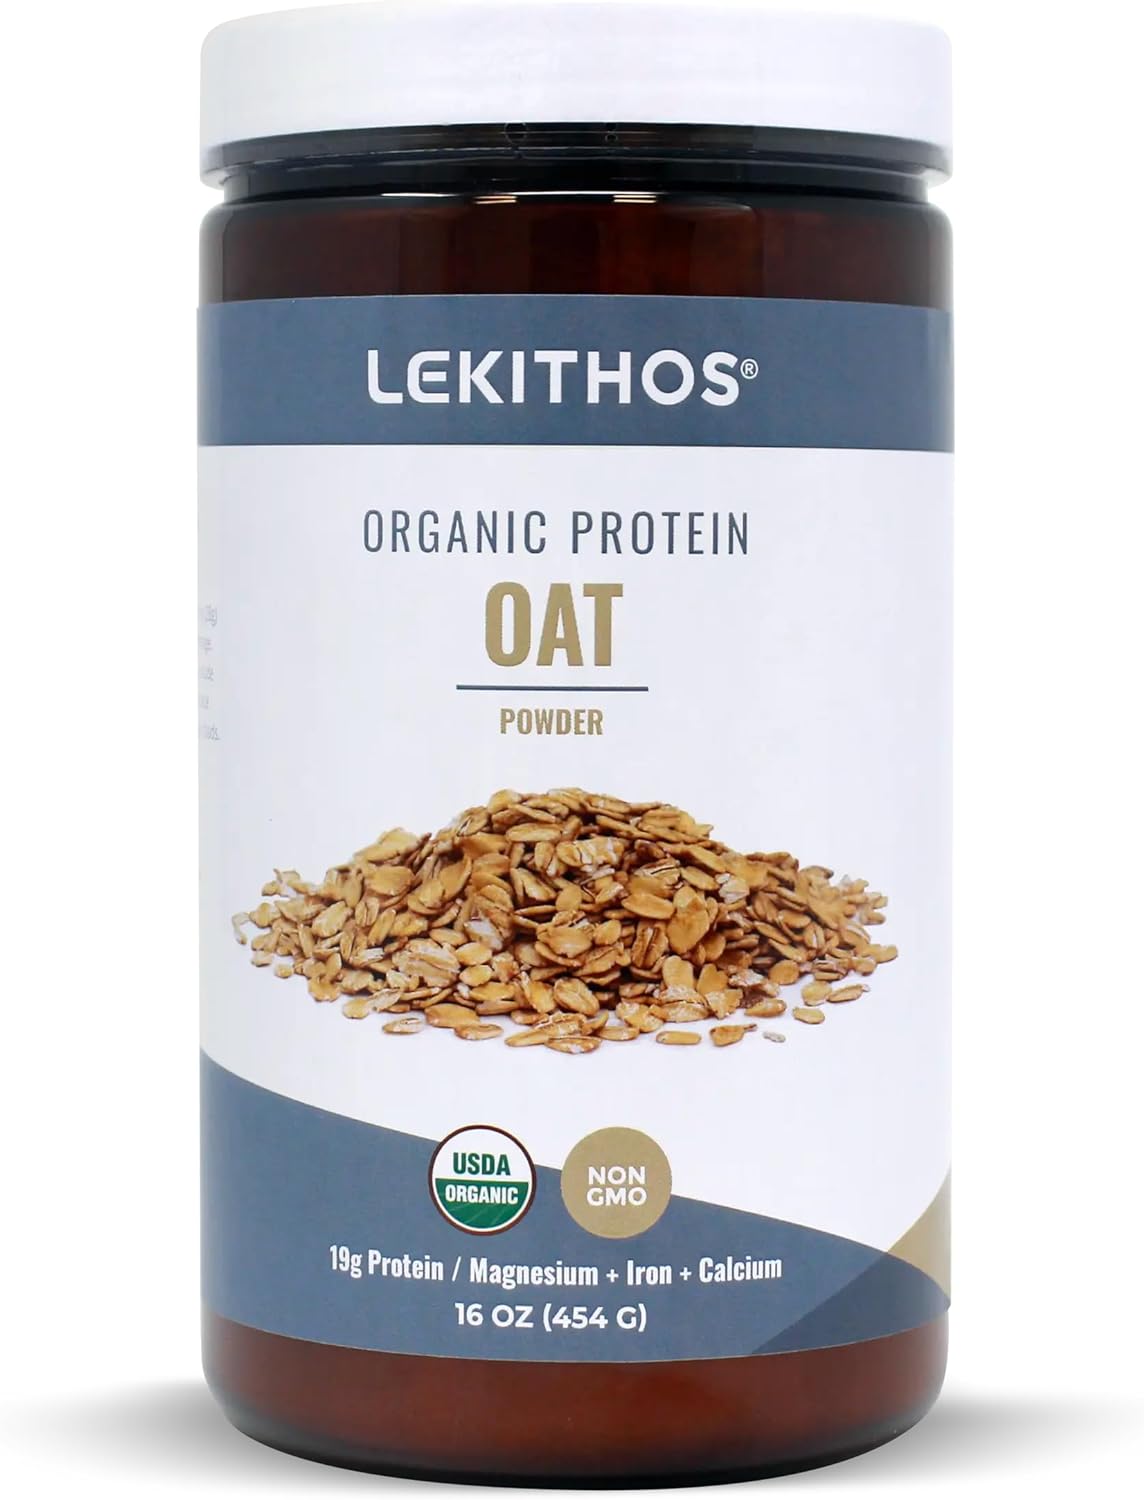 Lekithos Organic Oat Protein - 16 oz - 19g Protein - Certified USDA Or